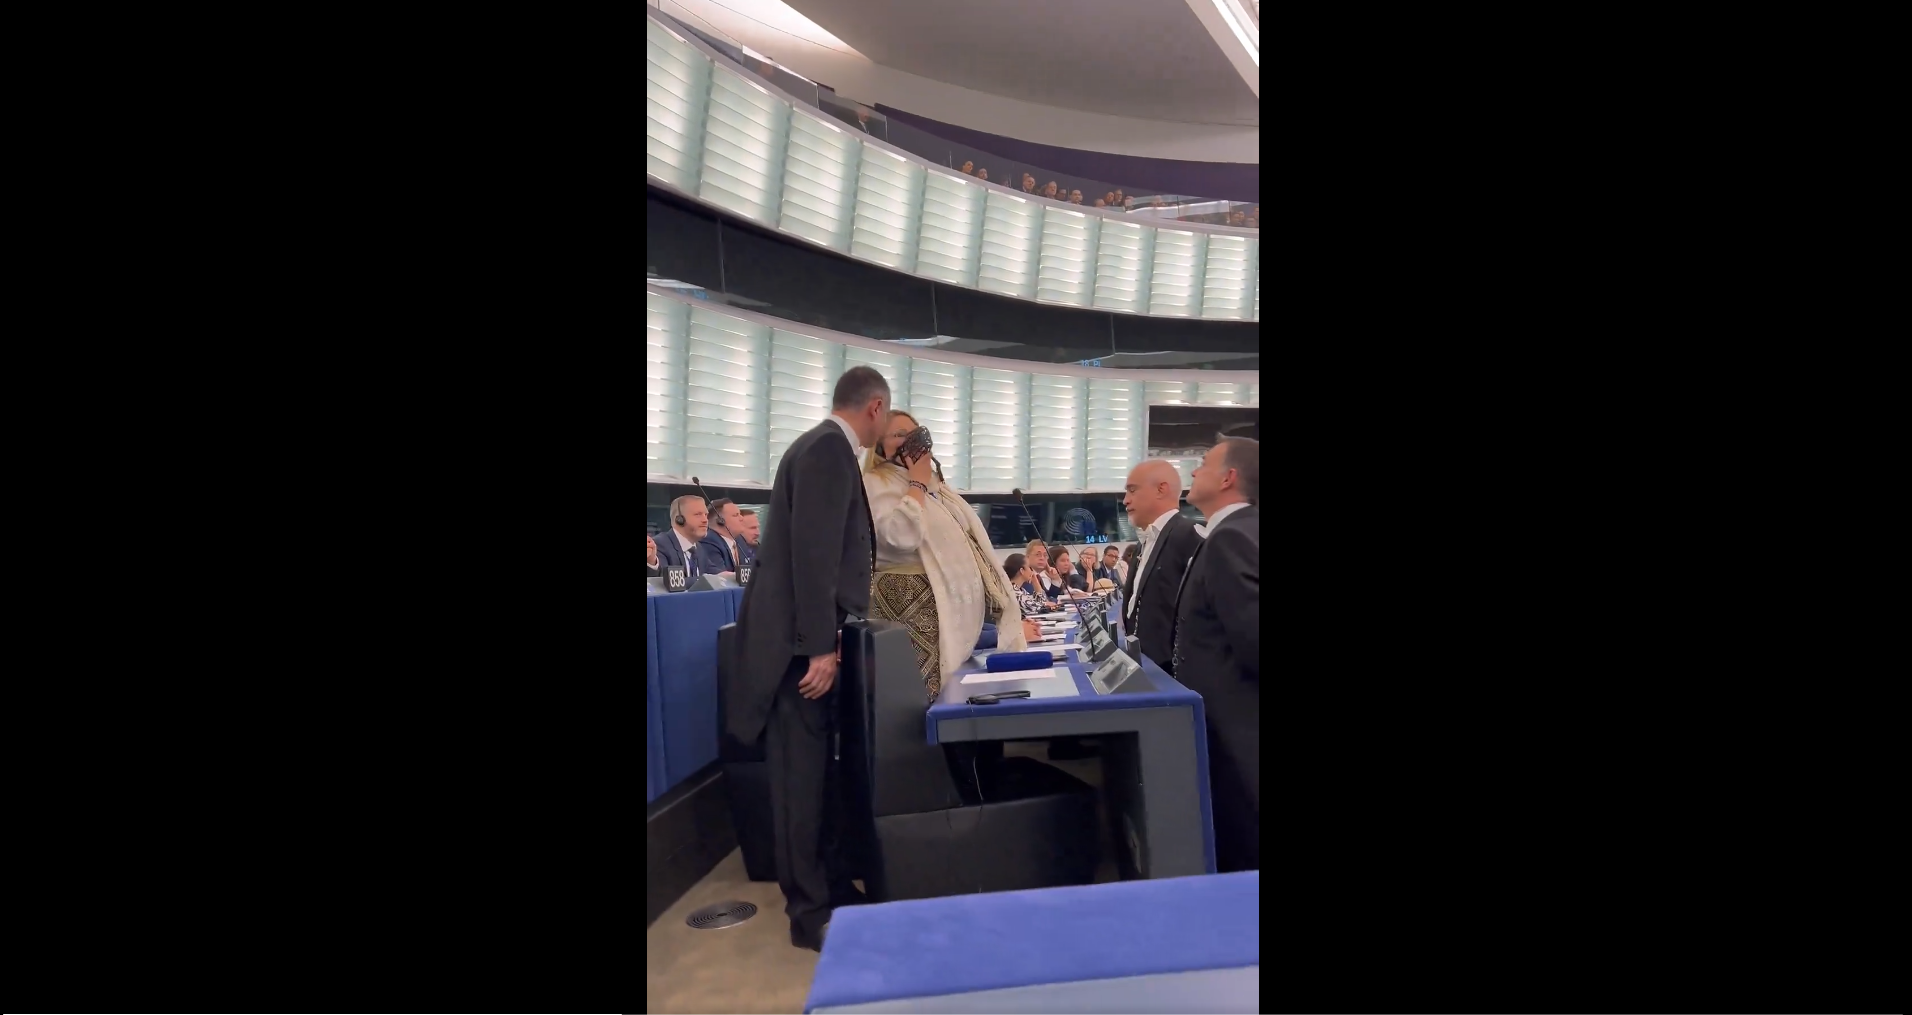 La diputada de ultraderecha, colocándose un bozal durante la sesión en el Parlamento Europeo.